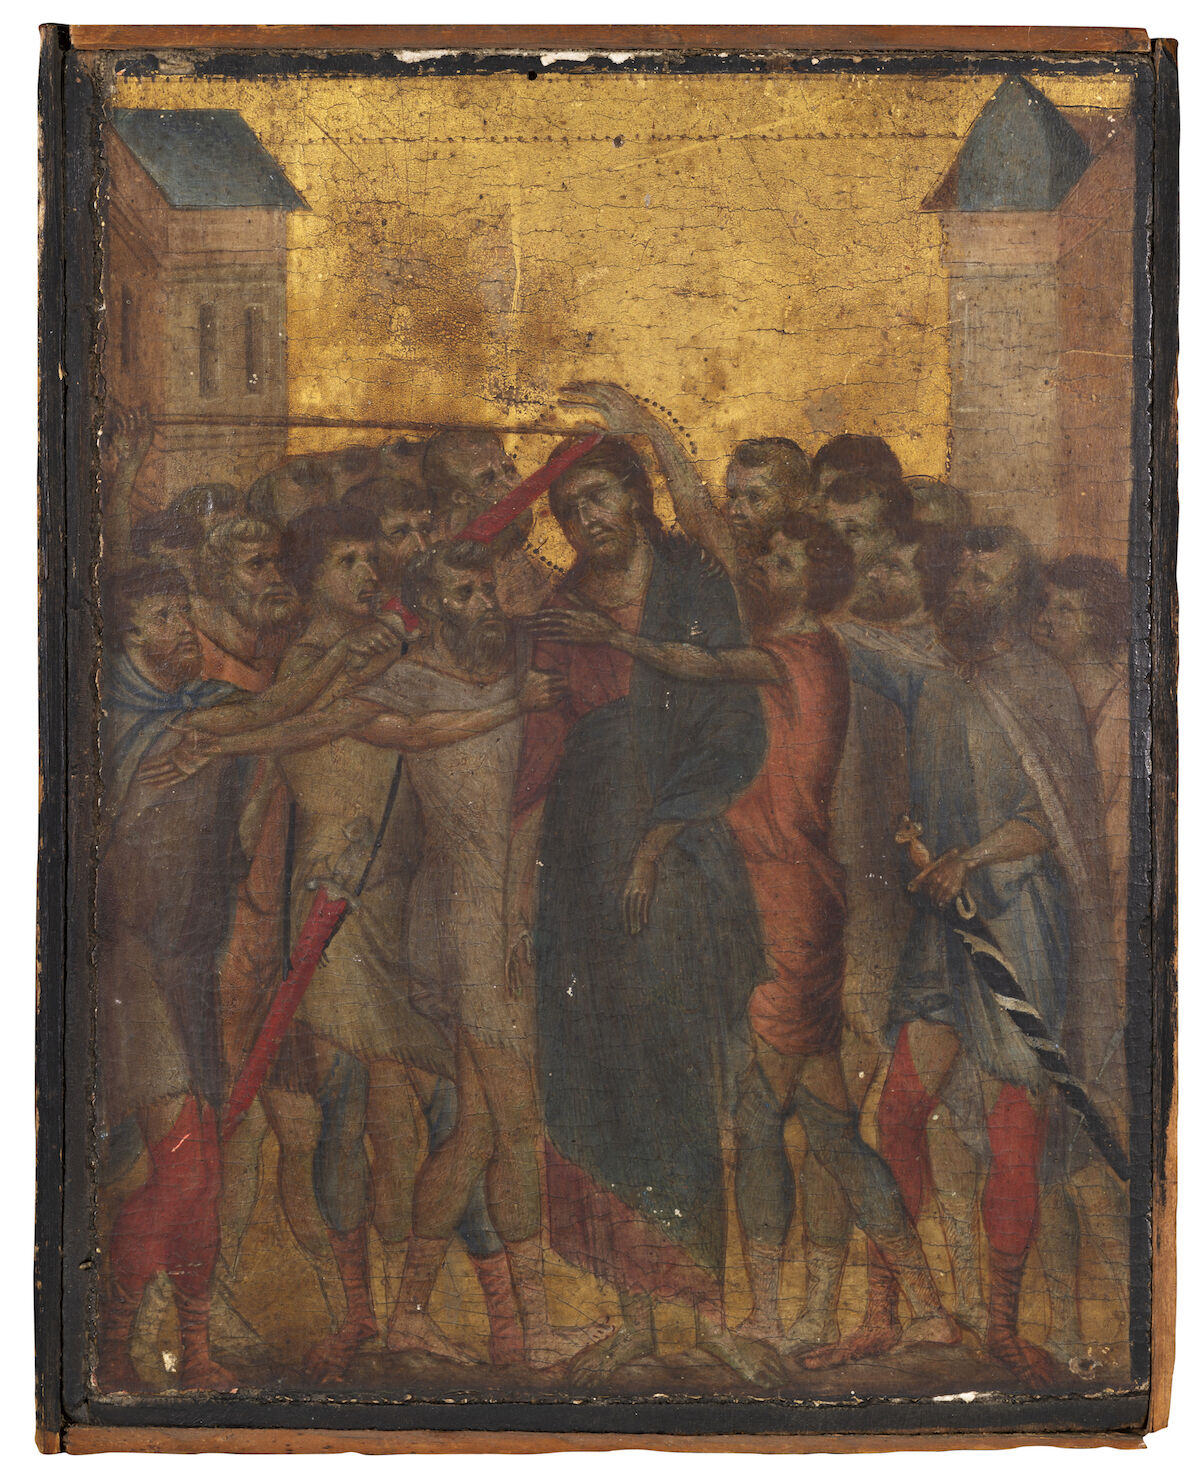 Cimabue, The Mocking of Christ or Christ Mocked. Est. €4 million–€6 million ($4.4 million–$6.6 million). Image © Actéon.